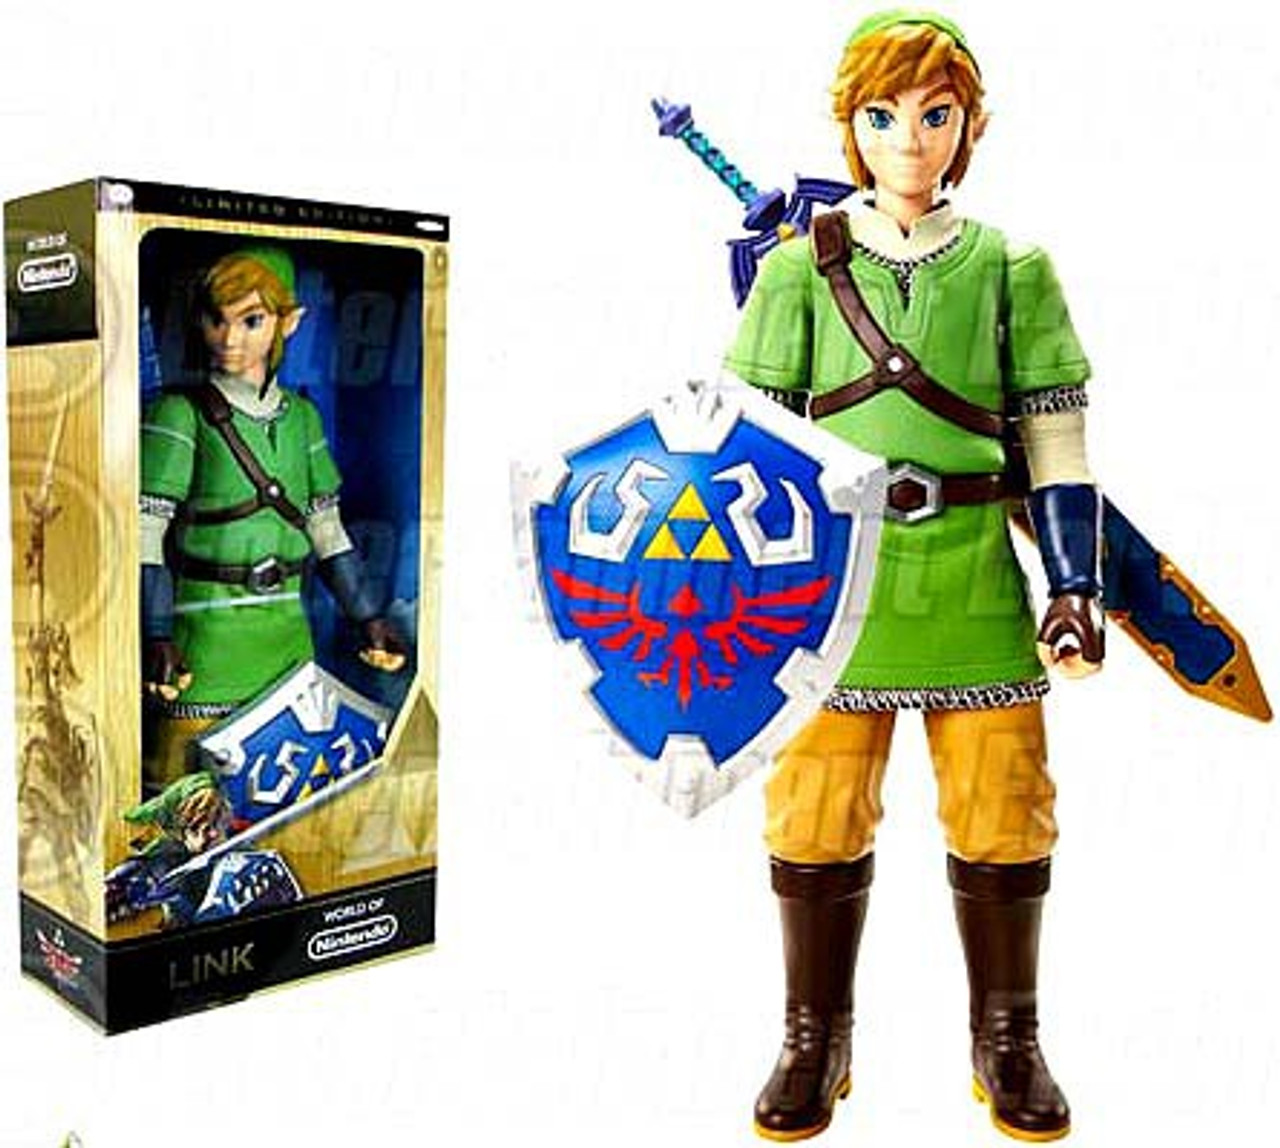 World Of Nintendo Legend Of Zelda Link Exclusive Big Deluxe Figure Skyward Sword Variant Damaged Package Mint Figures Jakks Pacific Toywiz